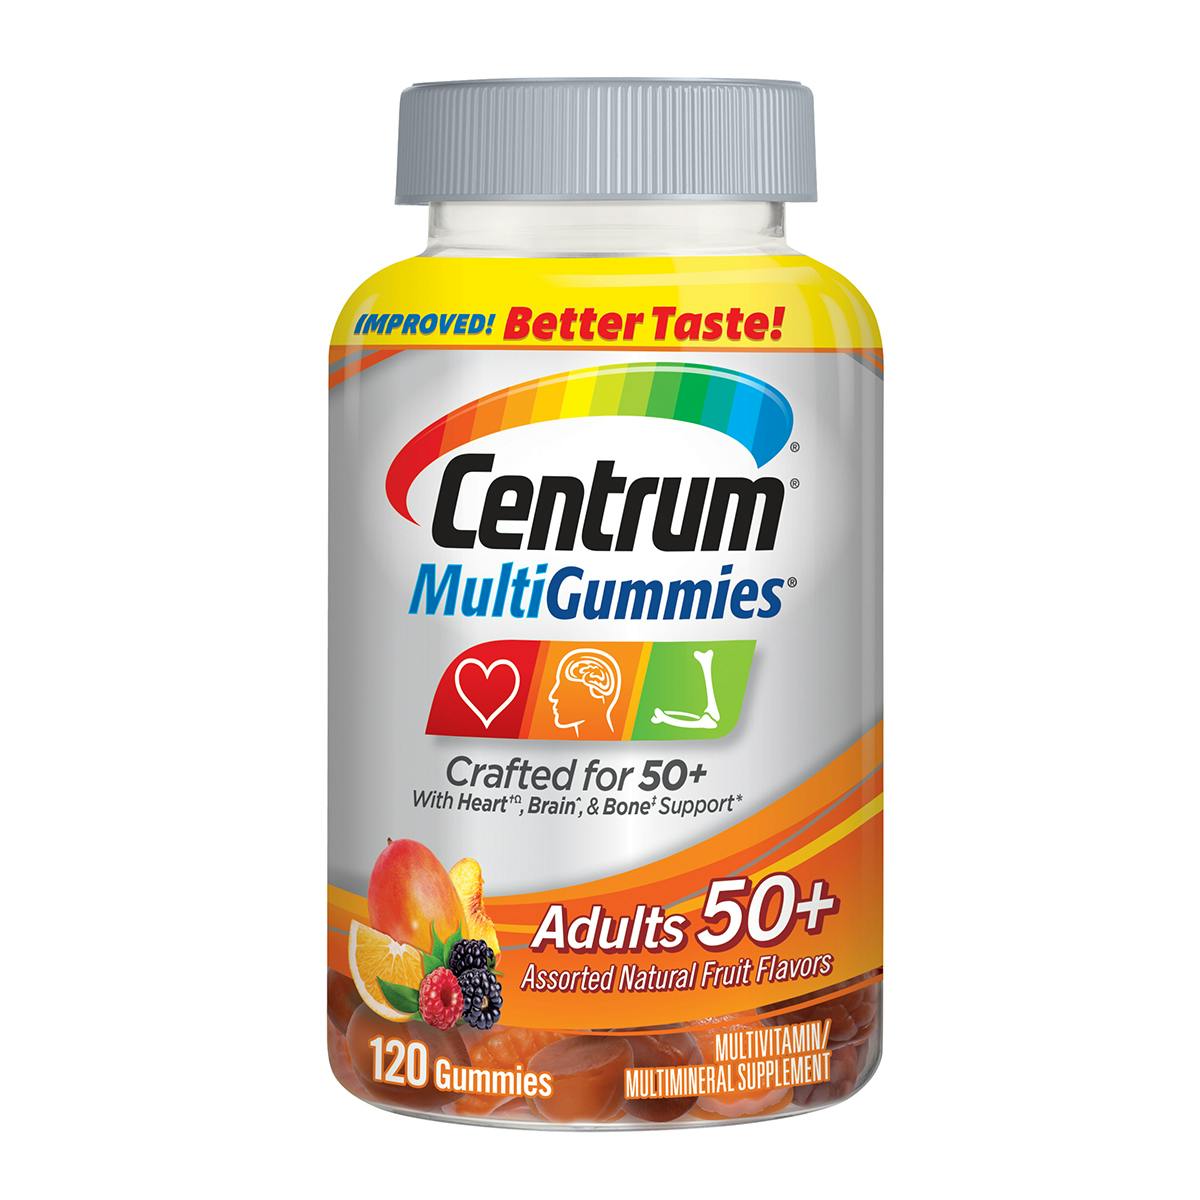 Bottle of MultiGummies Adult 50plus vitamins 